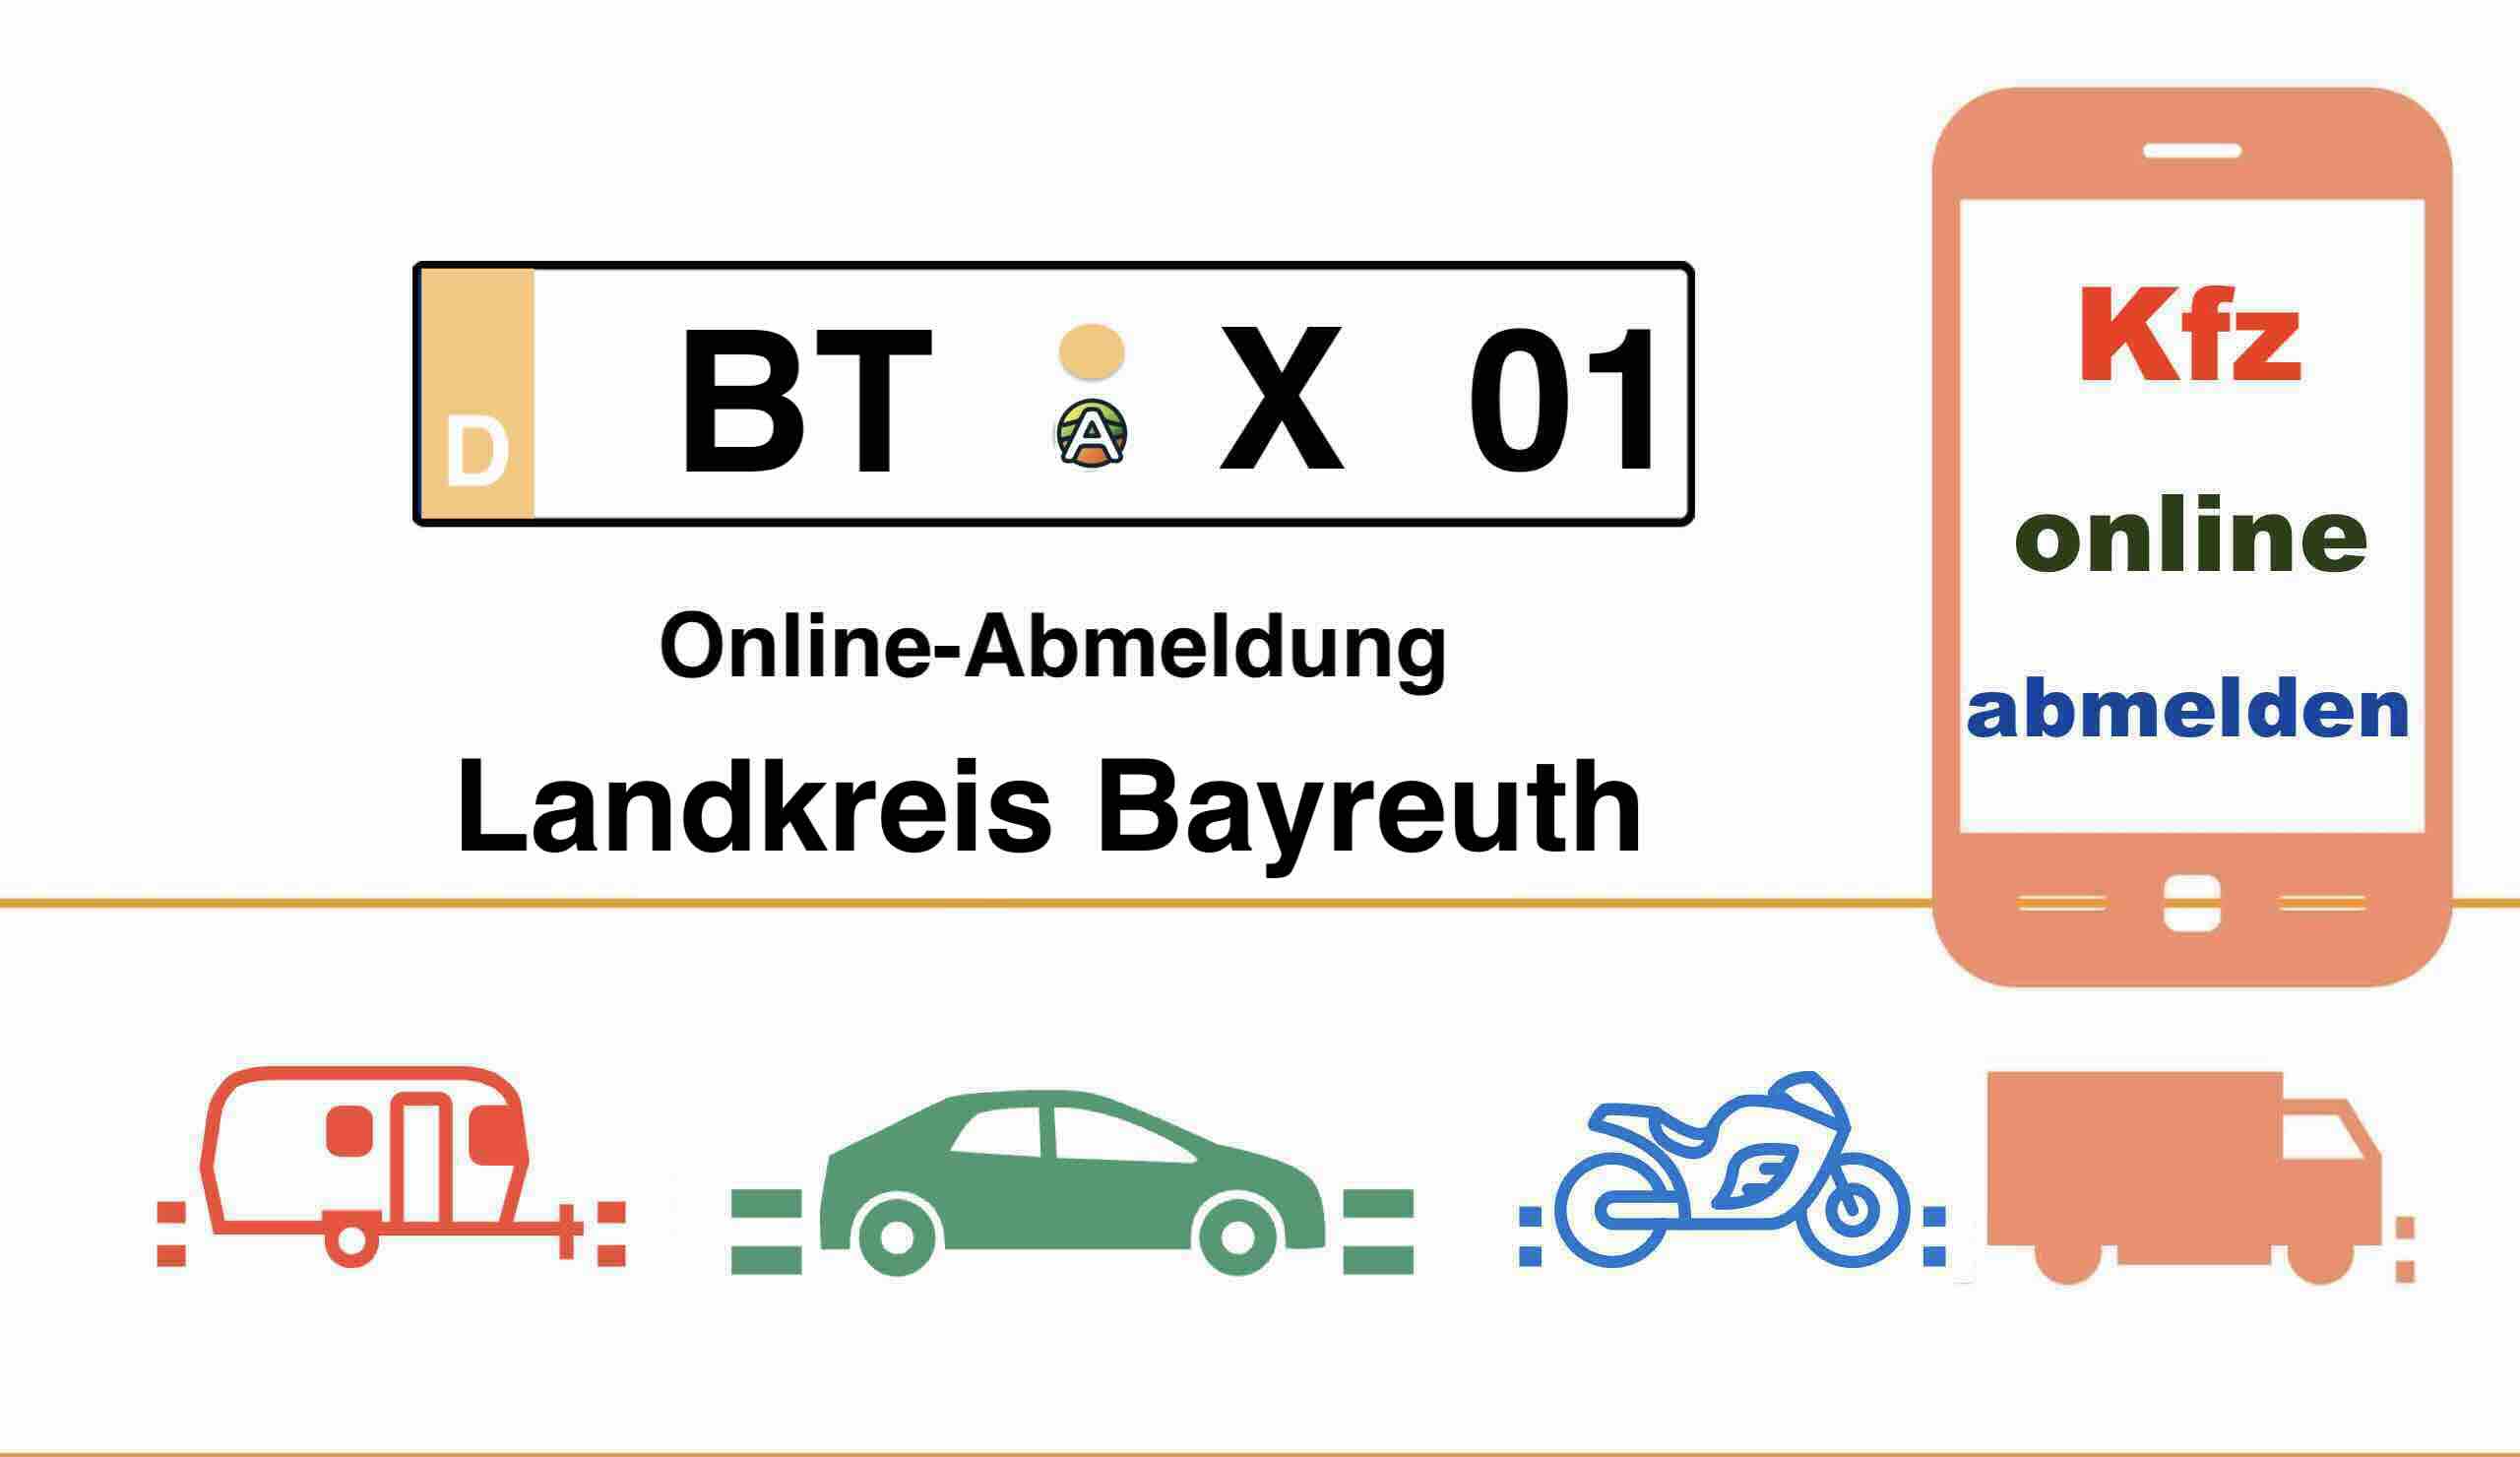 Kfz Online-Abmeldung im Landkreis Bayreuth 